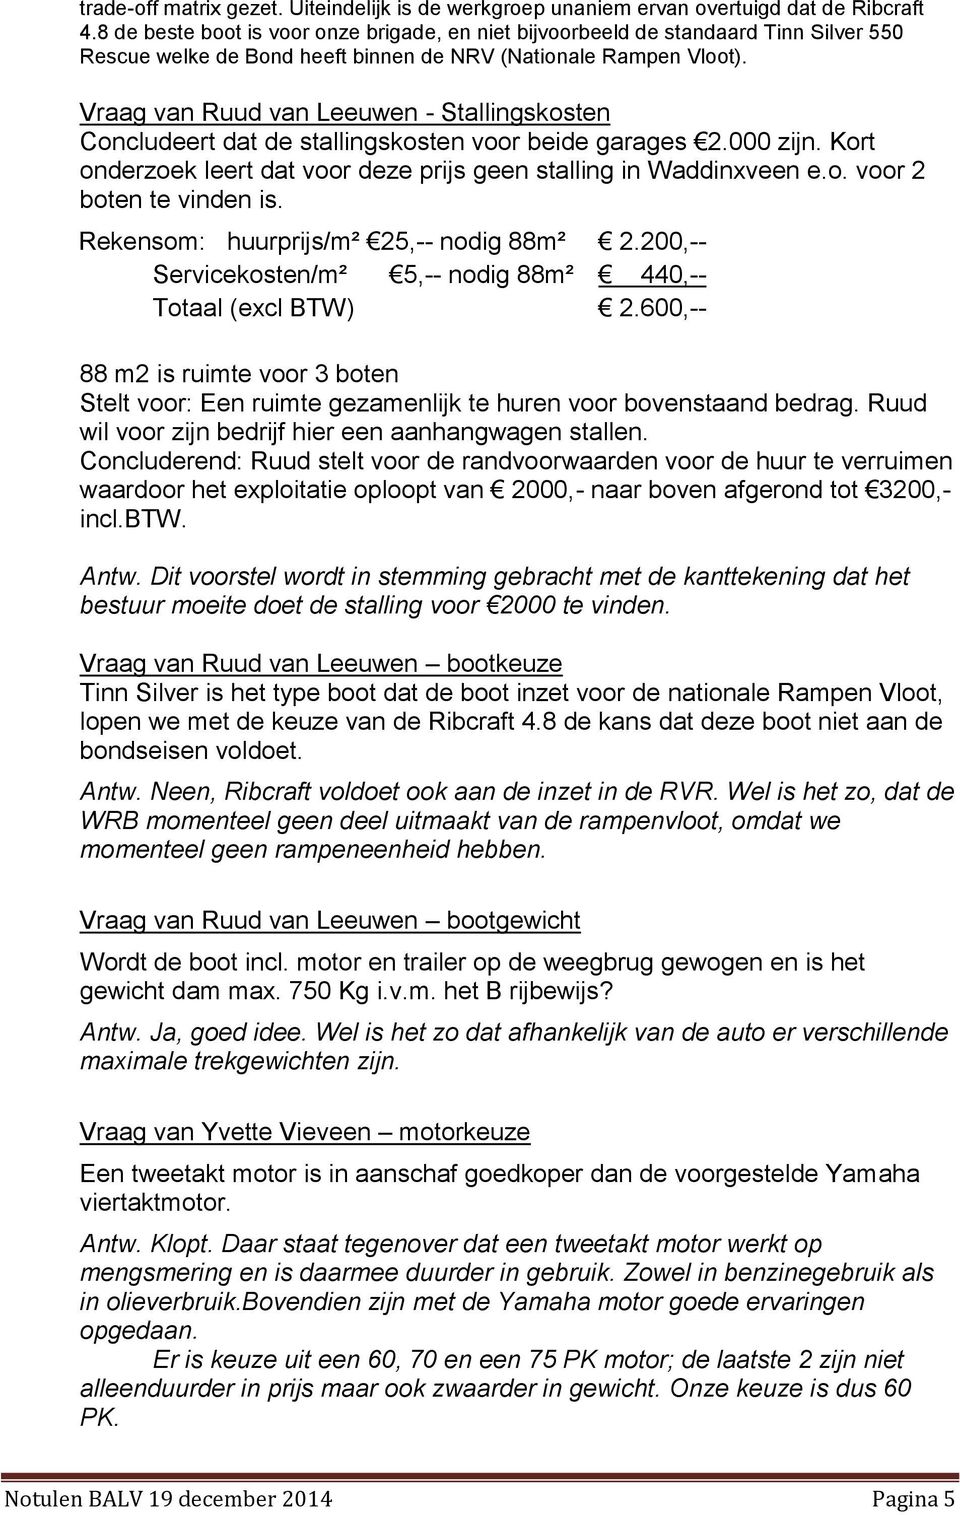 Vraag van Ruud van Leeuwen - Stallingskosten Concludeert dat de stallingskosten voor beide garages 2.000 zijn. Kort onderzoek leert dat voor deze prijs geen stalling in Waddinxveen e.o. voor 2 boten te vinden is.